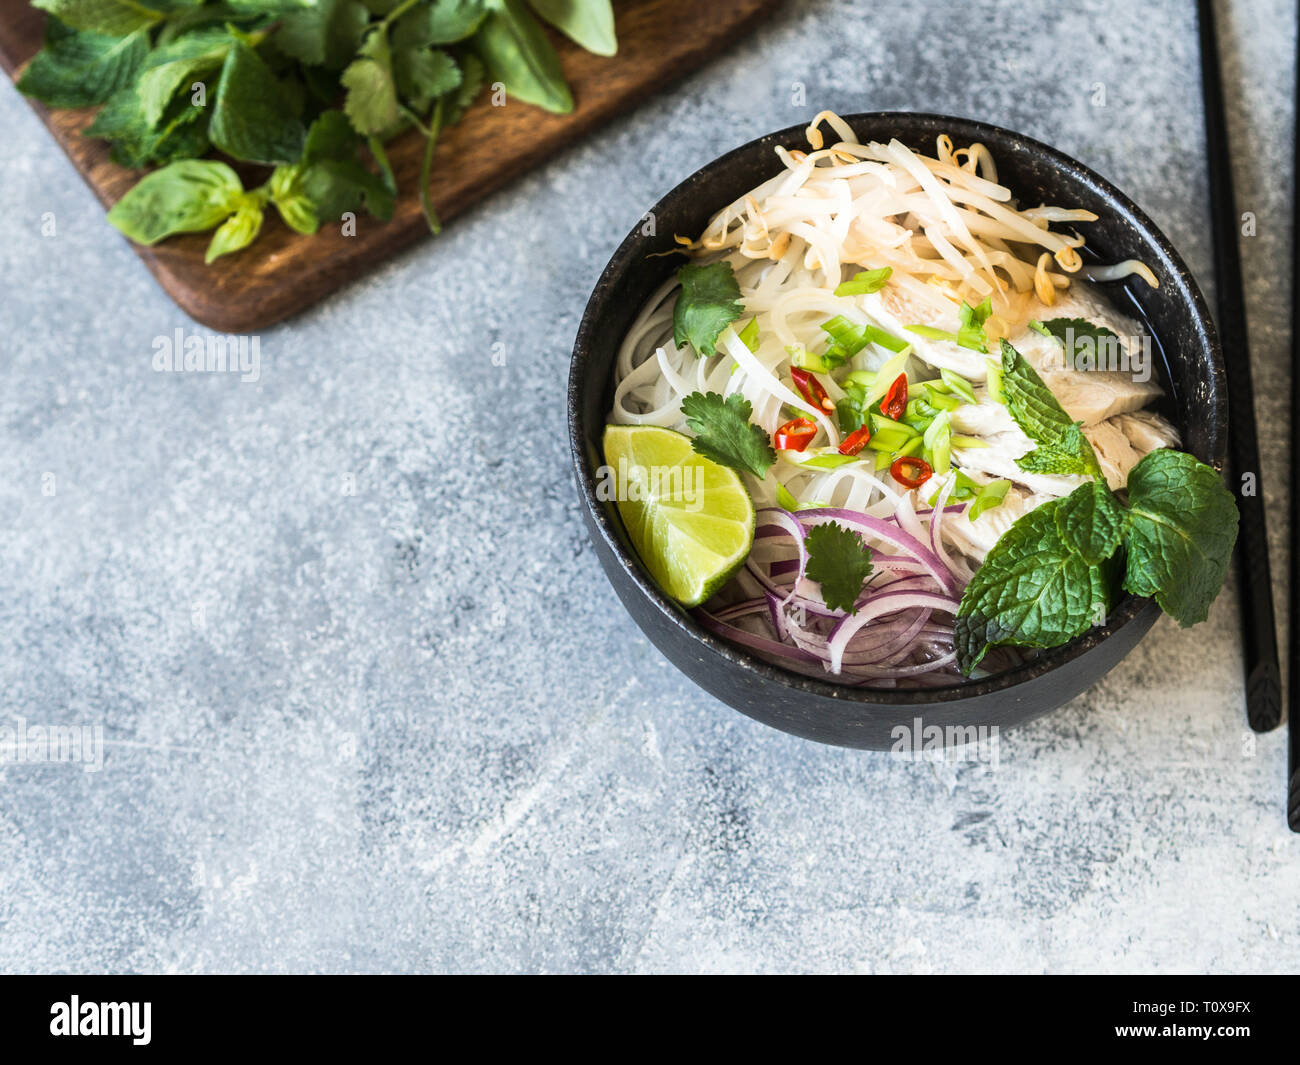 Tradizionale zuppa vietnamita- pho ga in nero ciotola con pollo e riso tagliatelle, menta e coriandolo, verde e rosso cipolla, peperoncino, i germogli di soia e calce Foto Stock